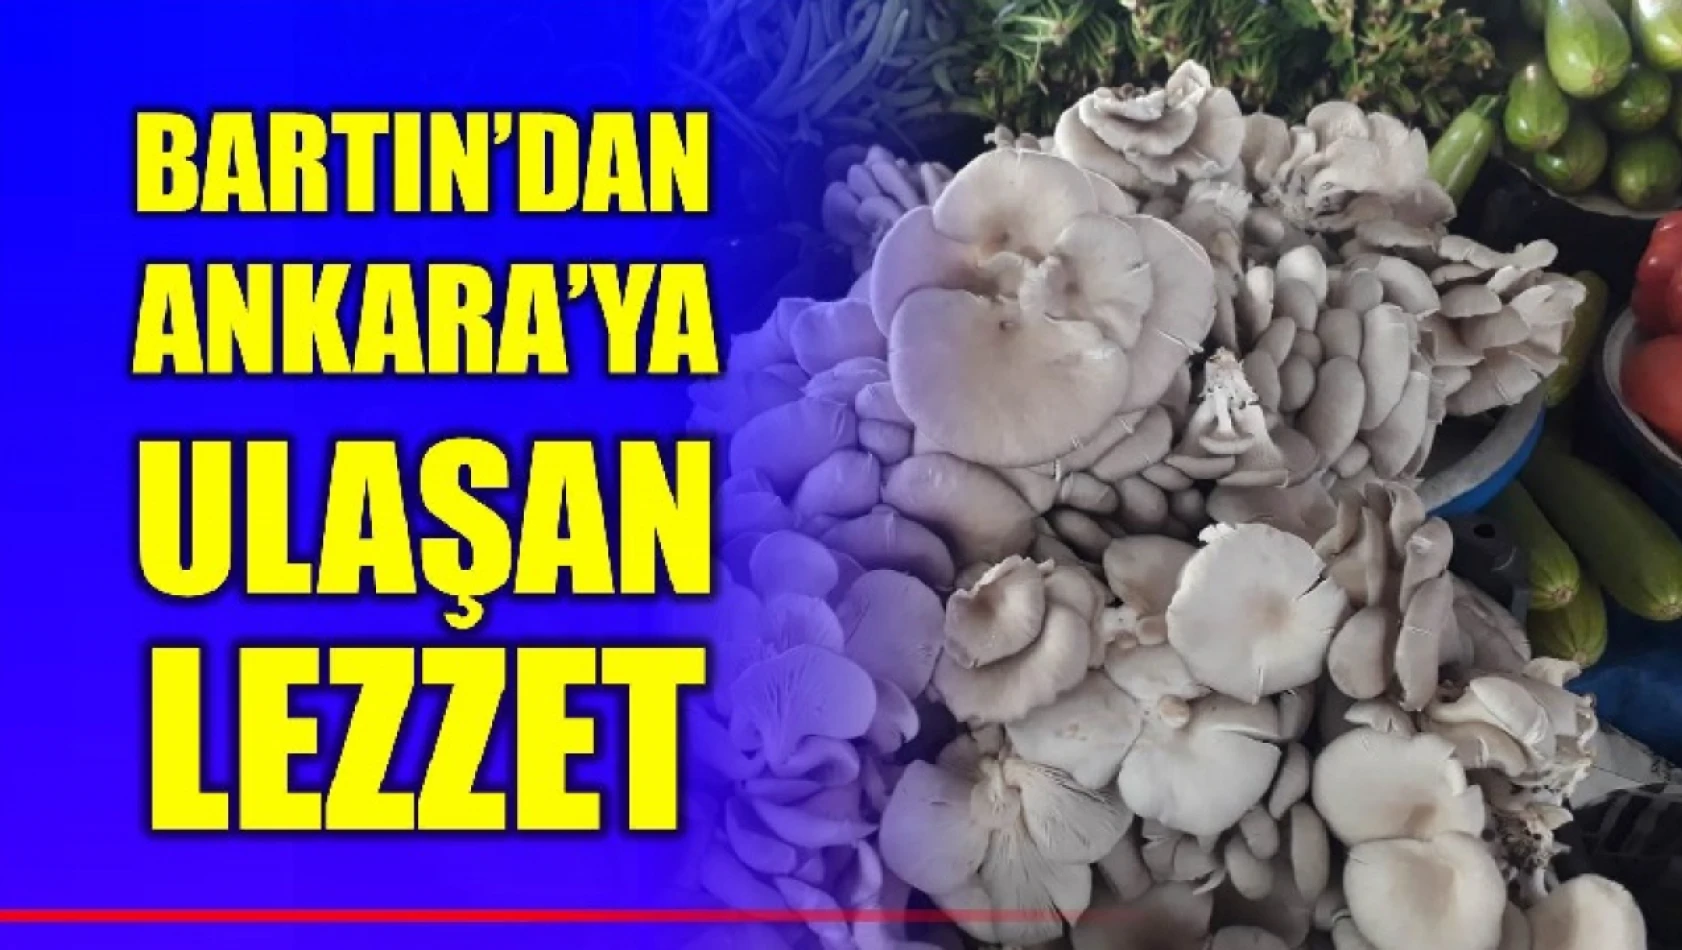 Bartın'dan Ankara'ya ulaşan lezzet